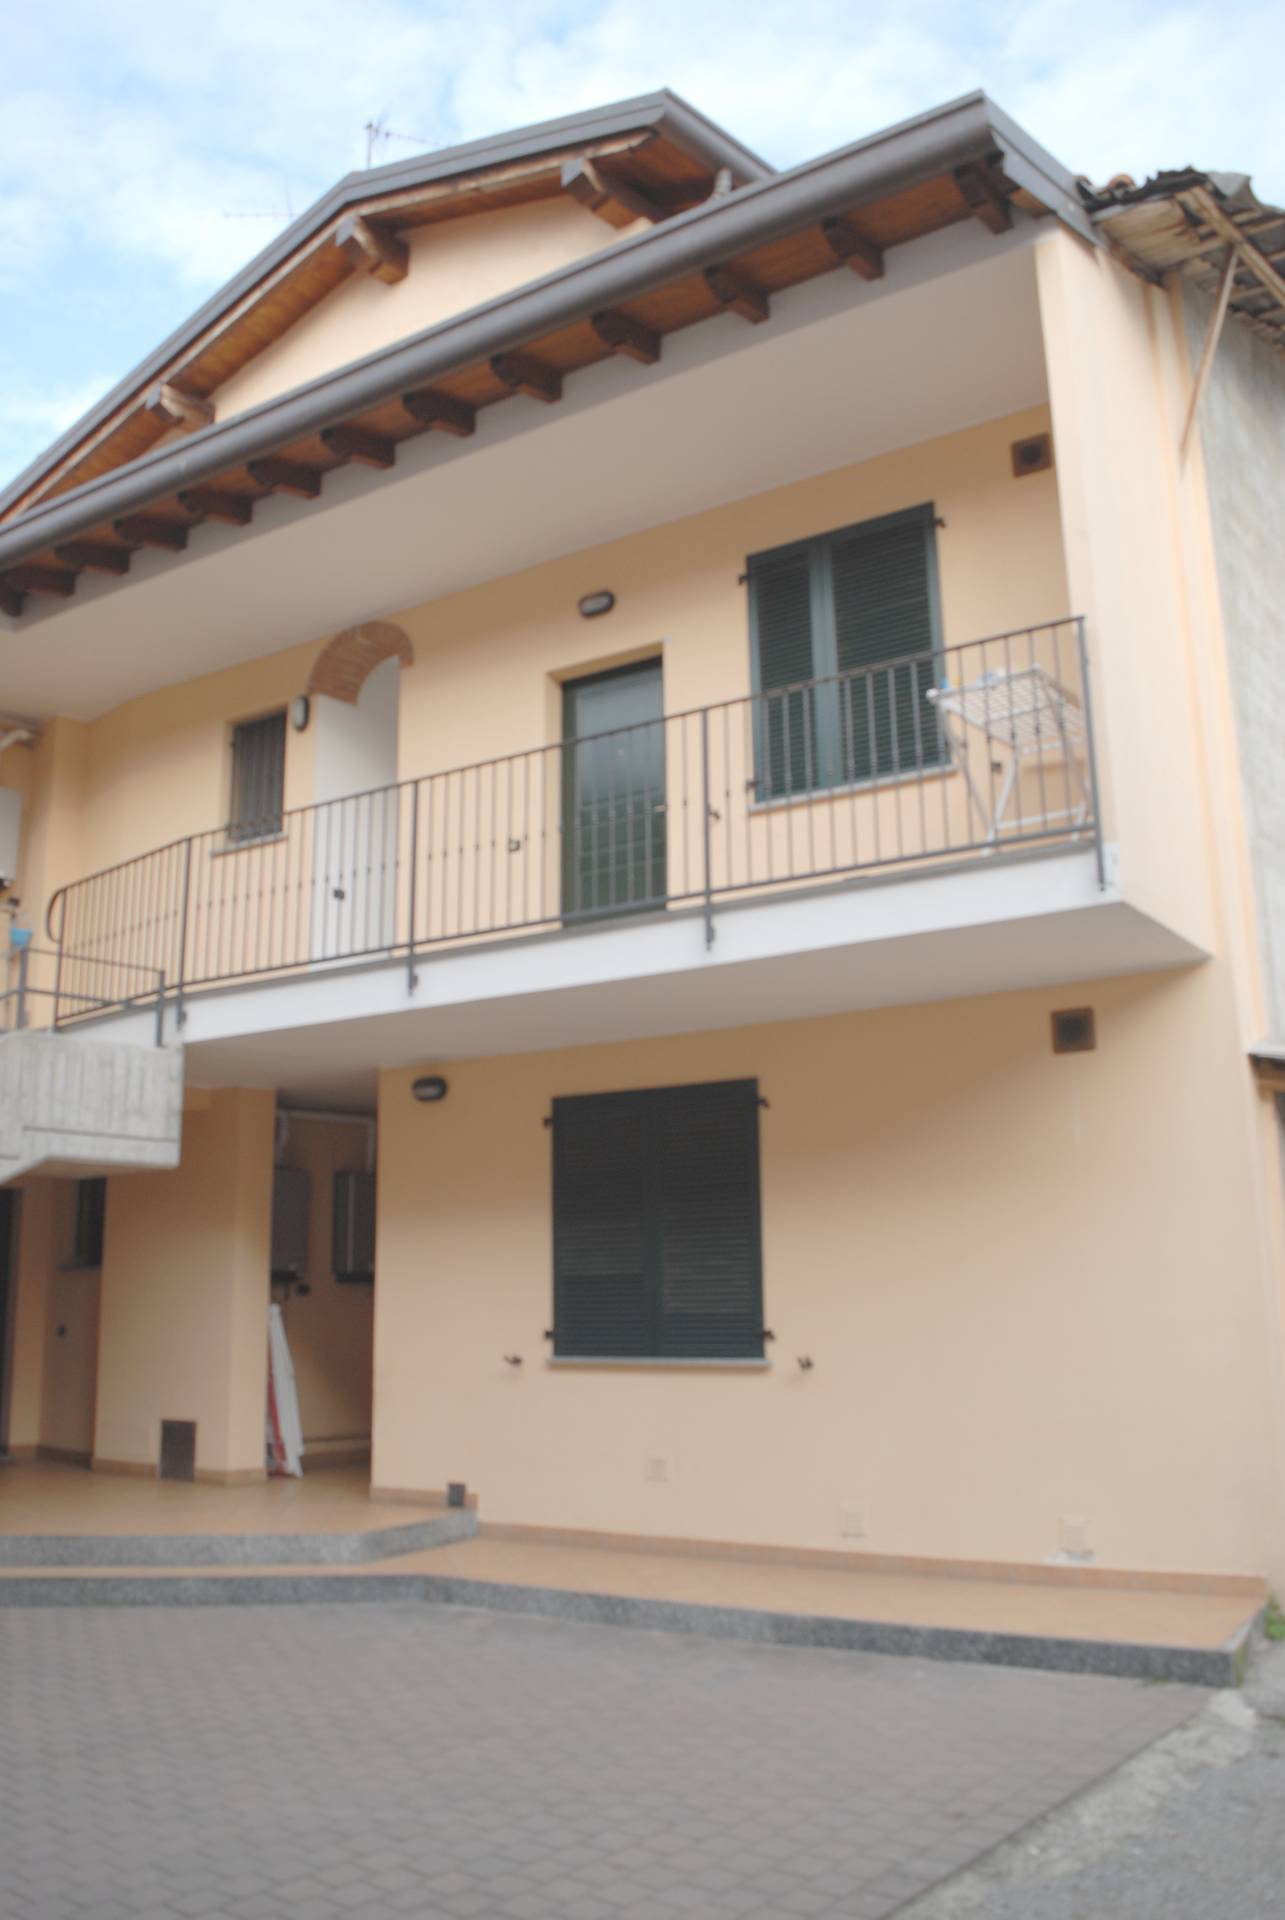 Appartamento in affitto a Calusco d'Adda, 2 locali, prezzo € 500 | PortaleAgenzieImmobiliari.it